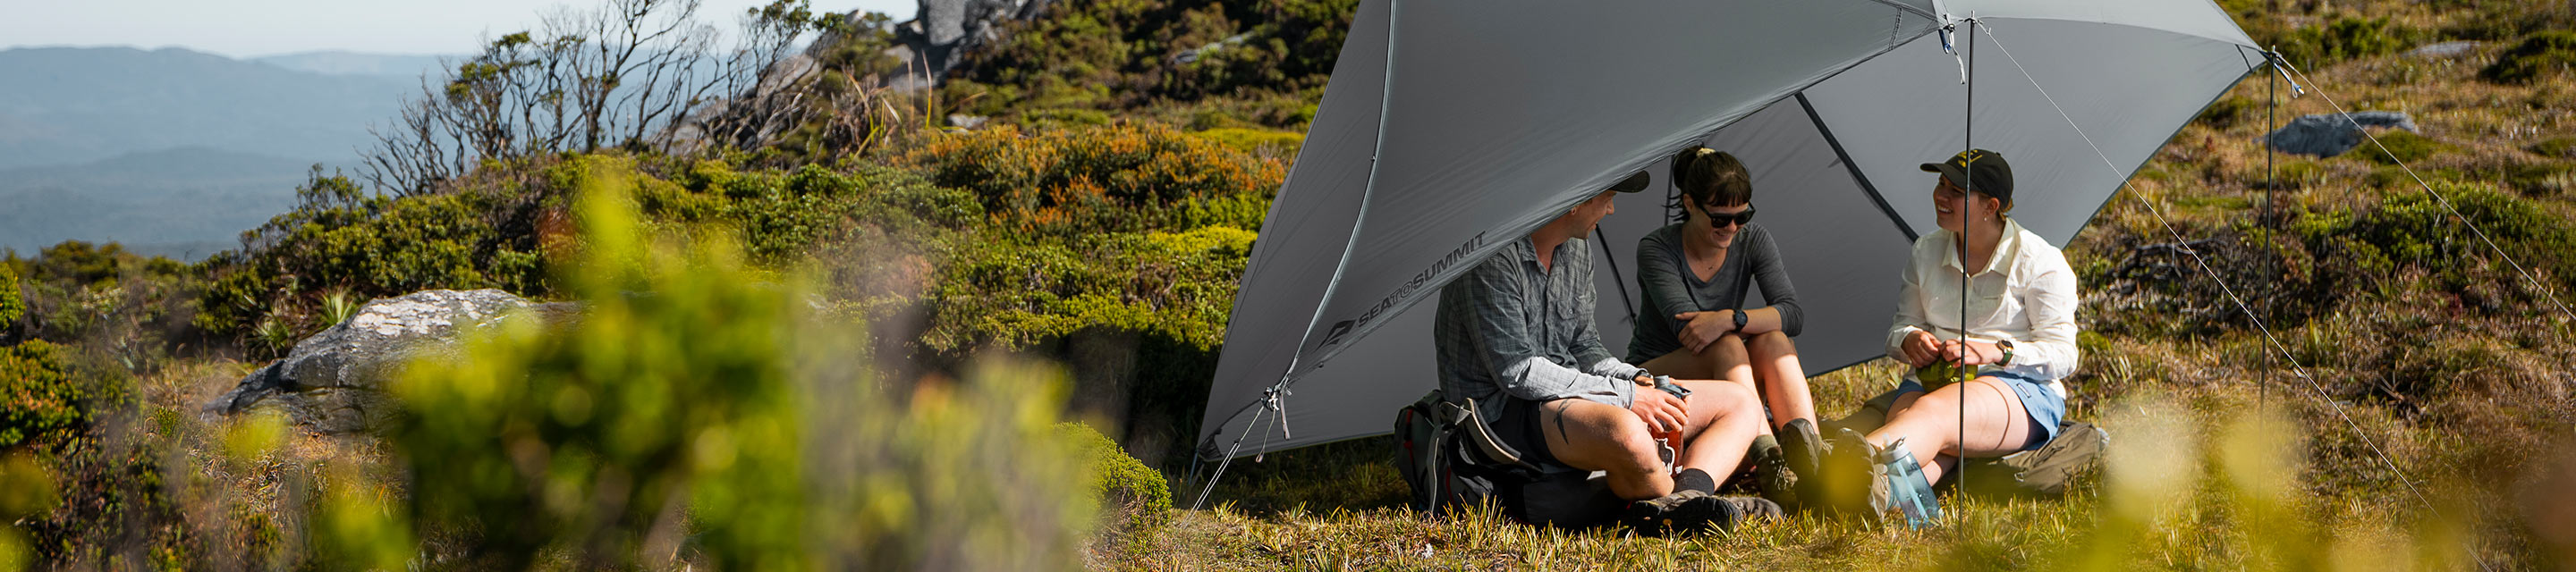 Gear | Telos Freestanding Ultralight Tents